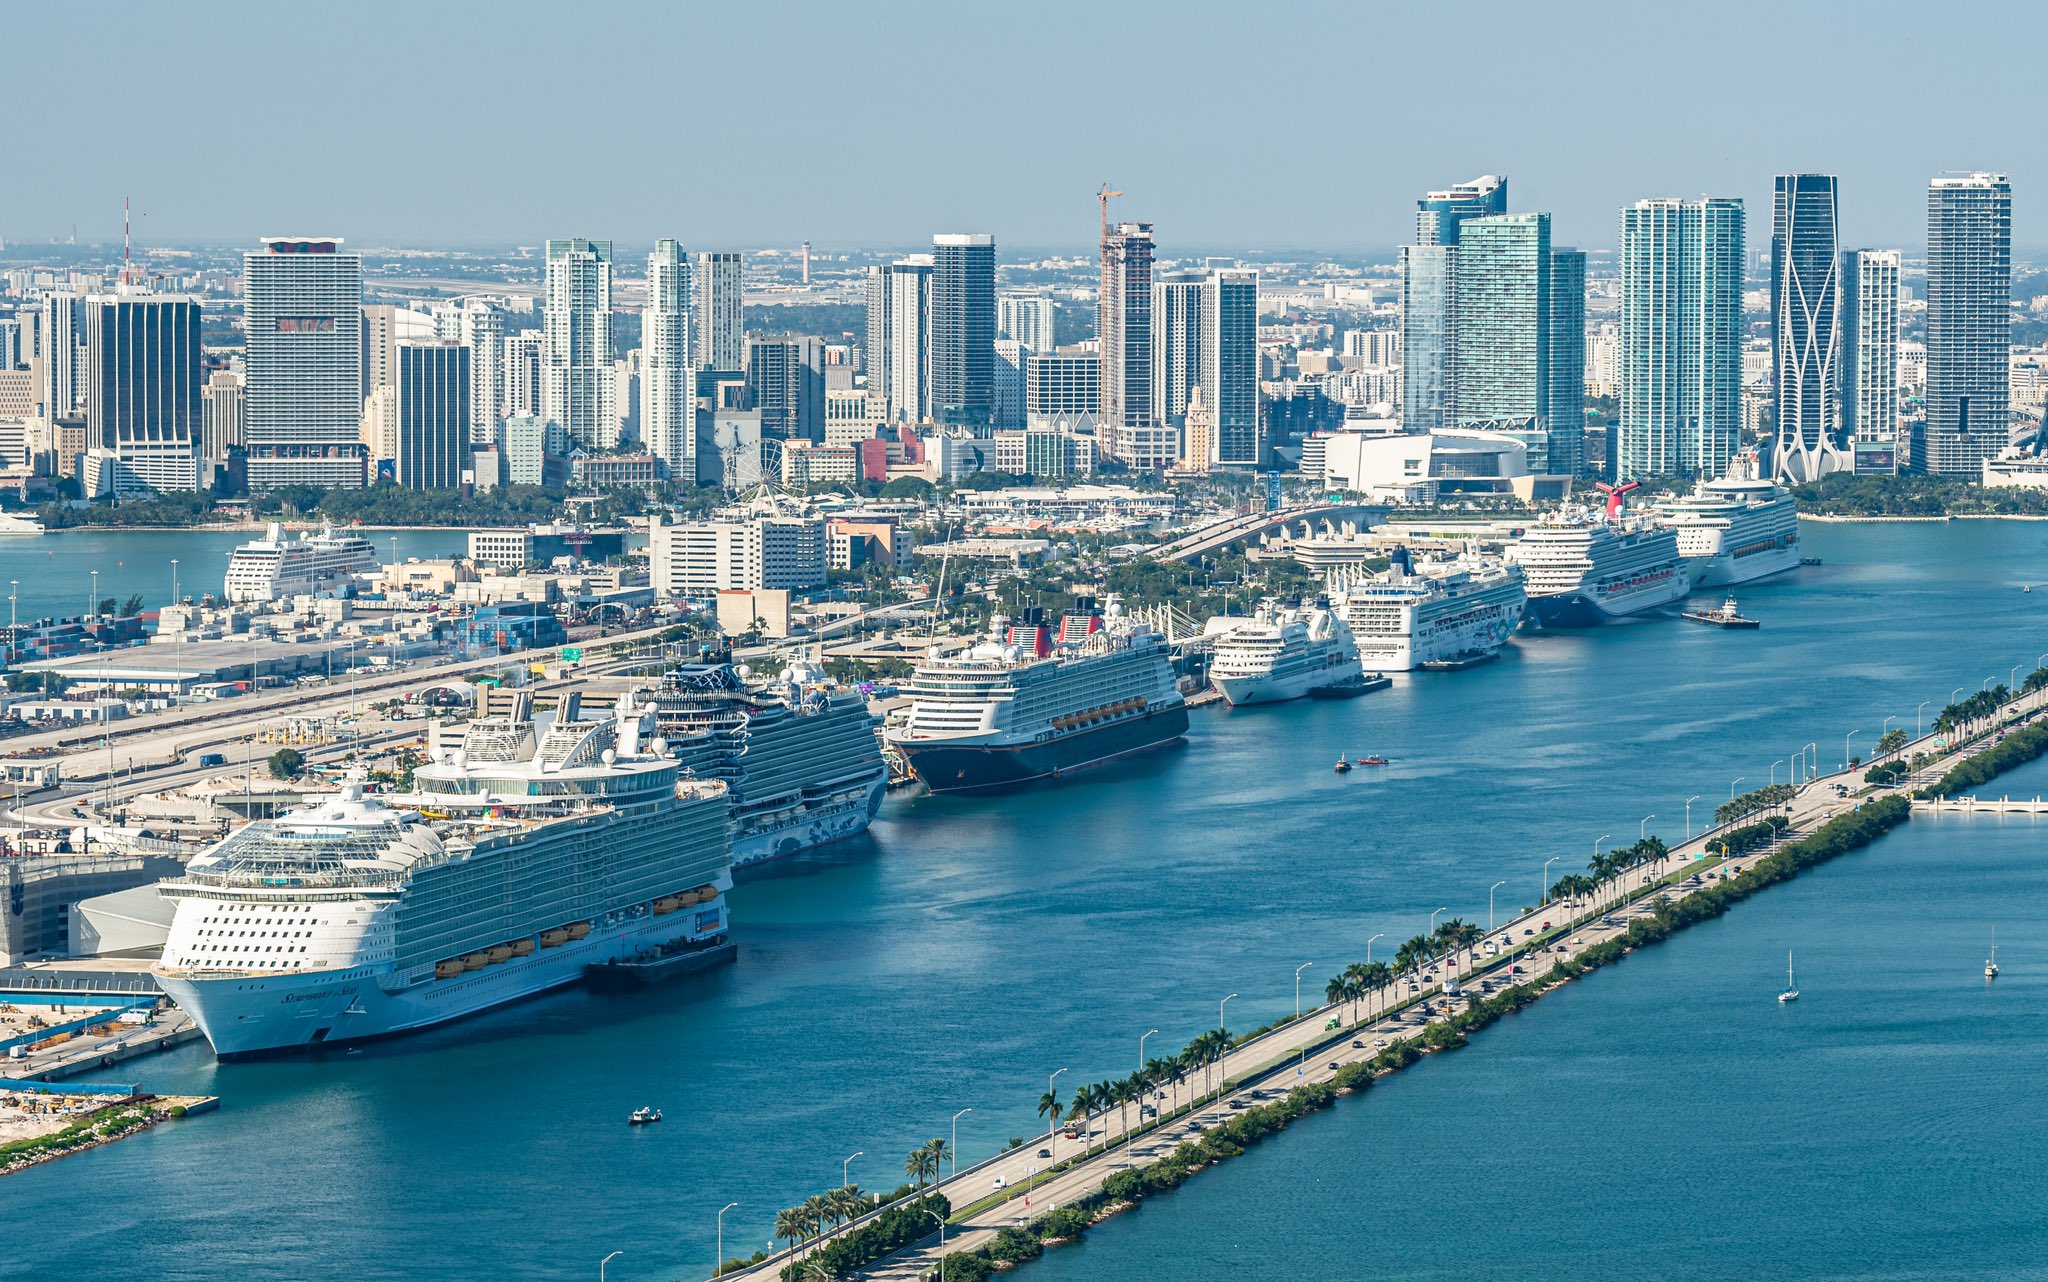 Port of Miami | Cruise Pick Up/Drop off + Shore Excursion Tours | Miami, Miami Beach, Everglades, & Big Cypress | Miami Native Tours